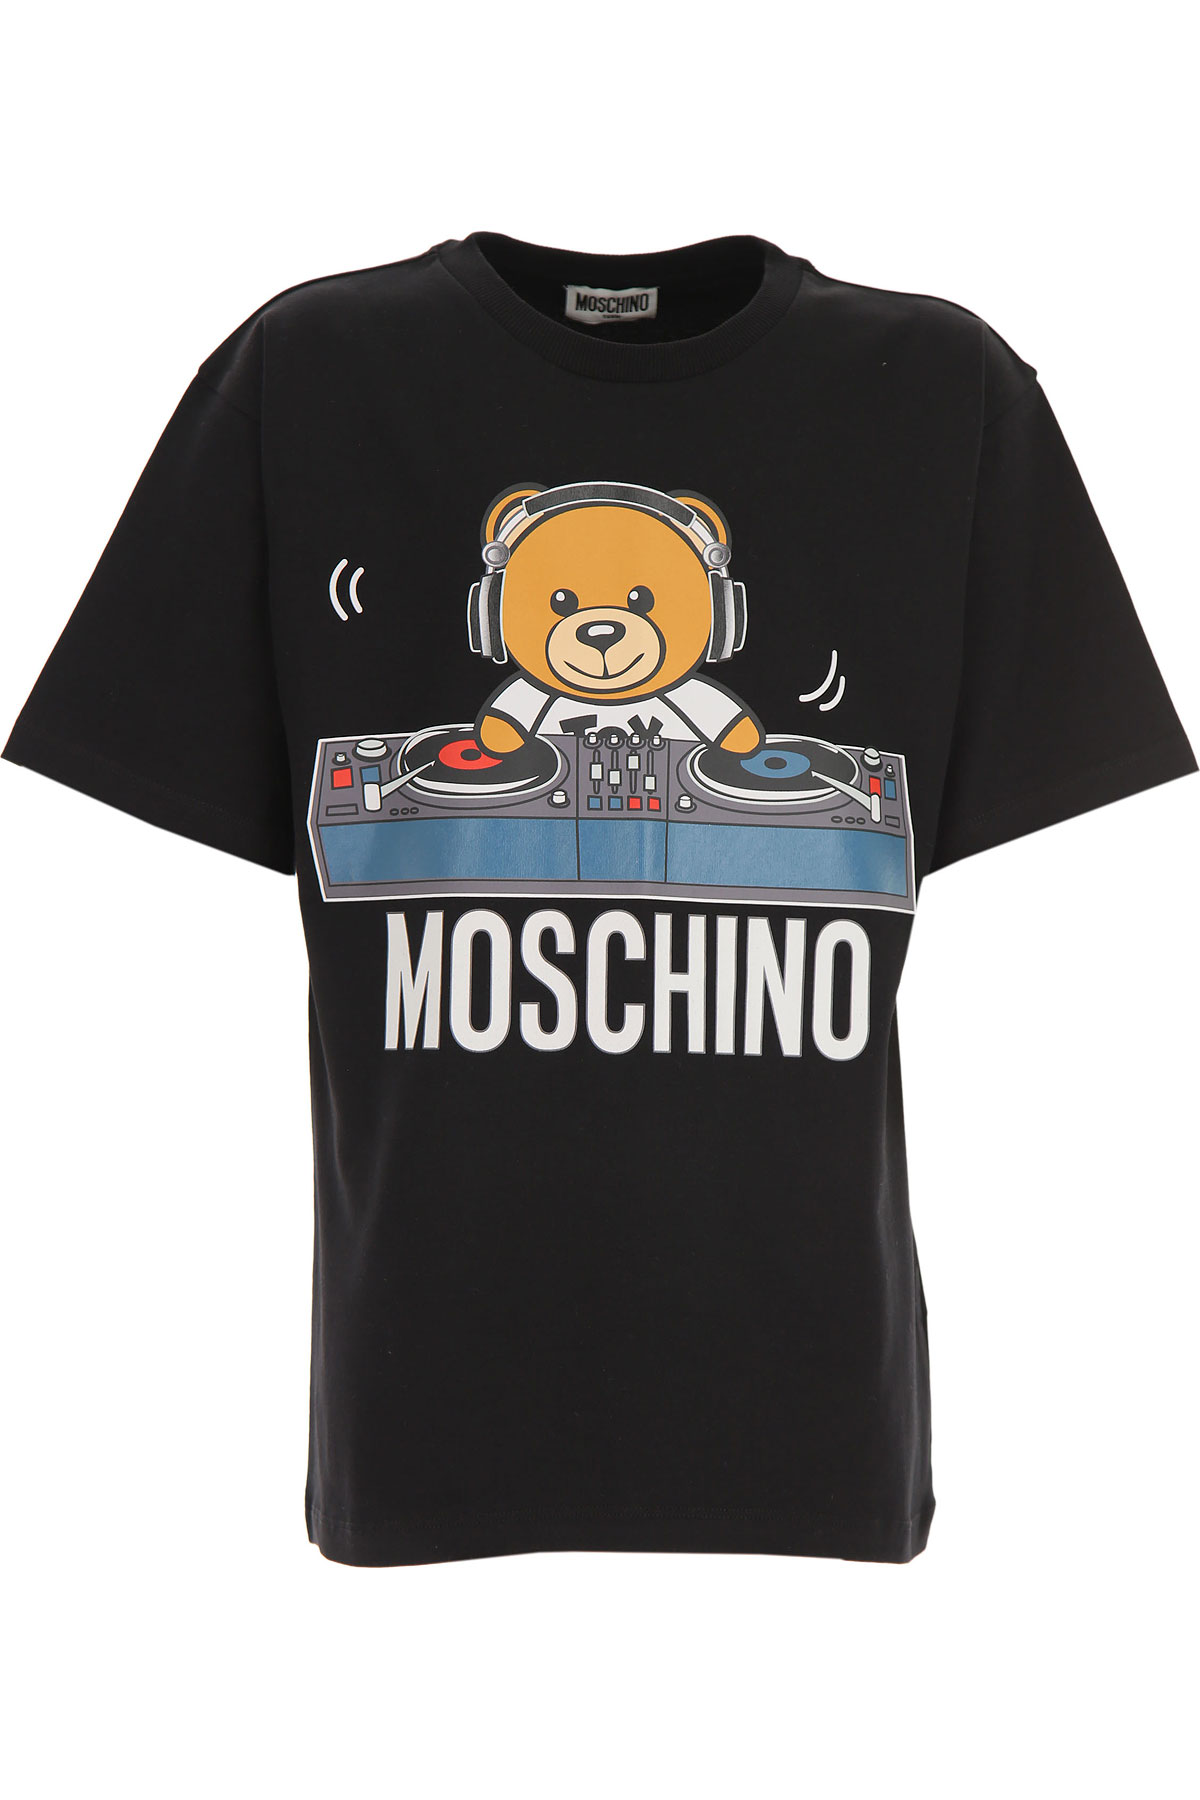 Moschino Kinder T-Shirt für Jungen Günstig im Sale, Schwarz, Baumwolle, 2017, 12Y 6Y 8Y